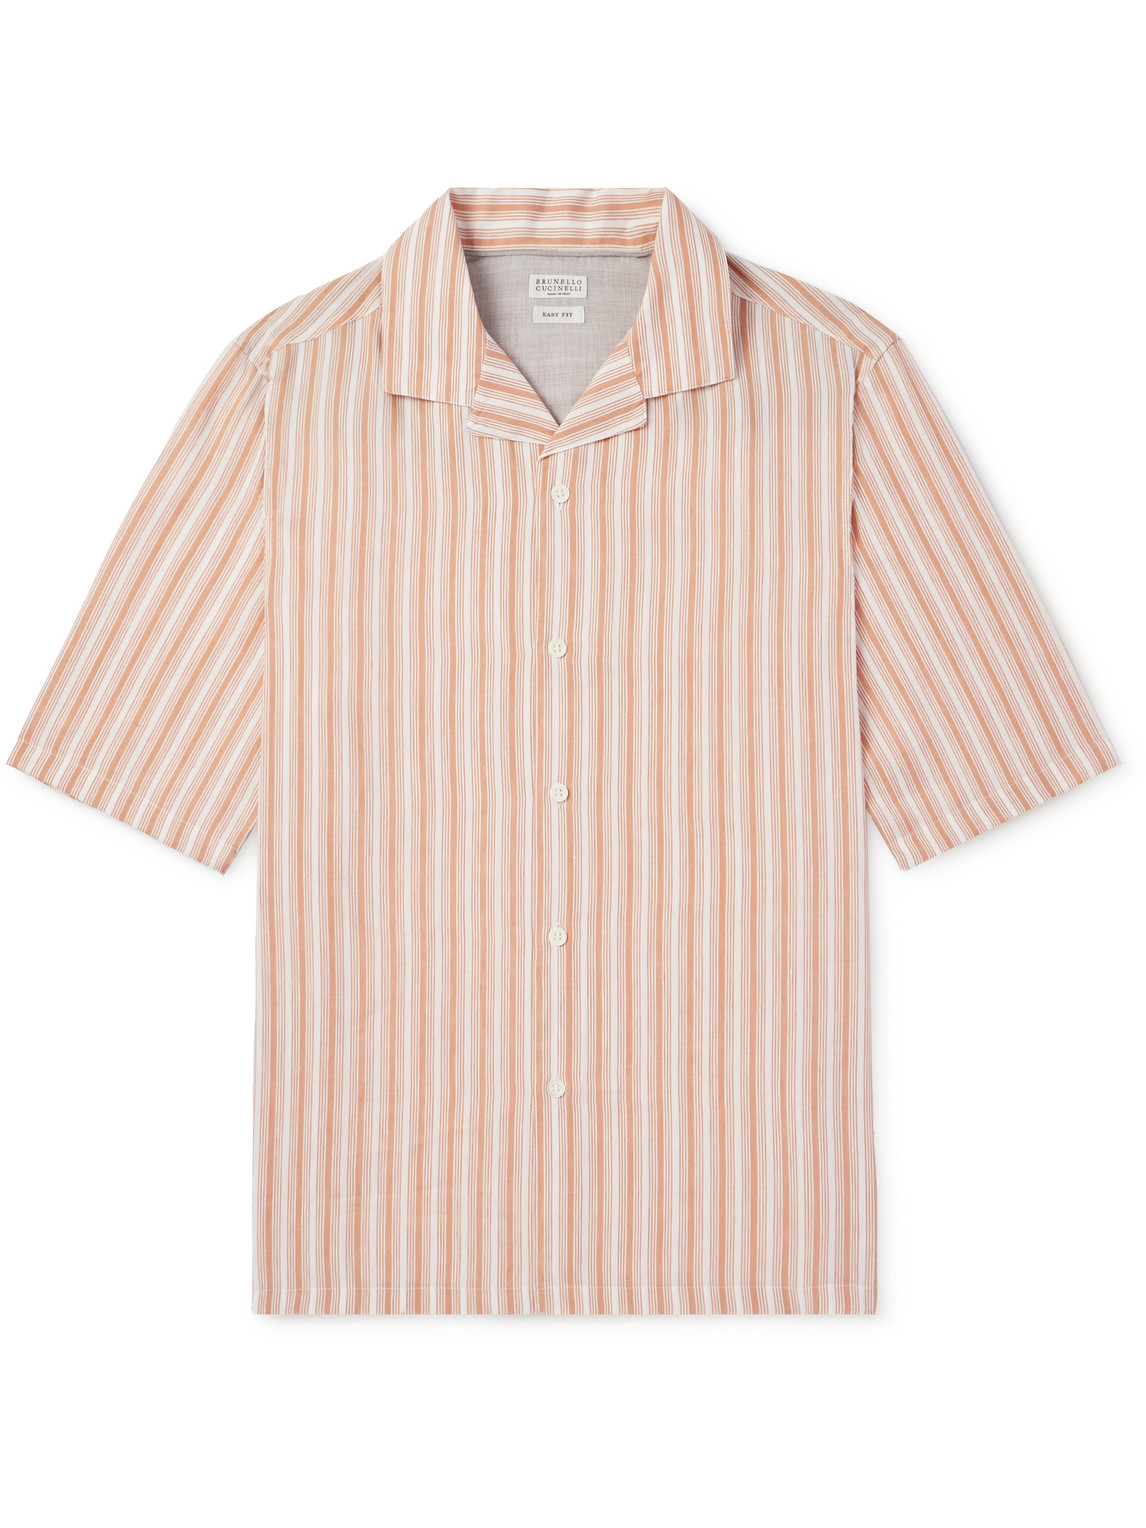 Brunello Cucinelli - Camp-Collar Striped Linen and Lyocell-Blend Shirt - Men - Orange - XL von Brunello Cucinelli